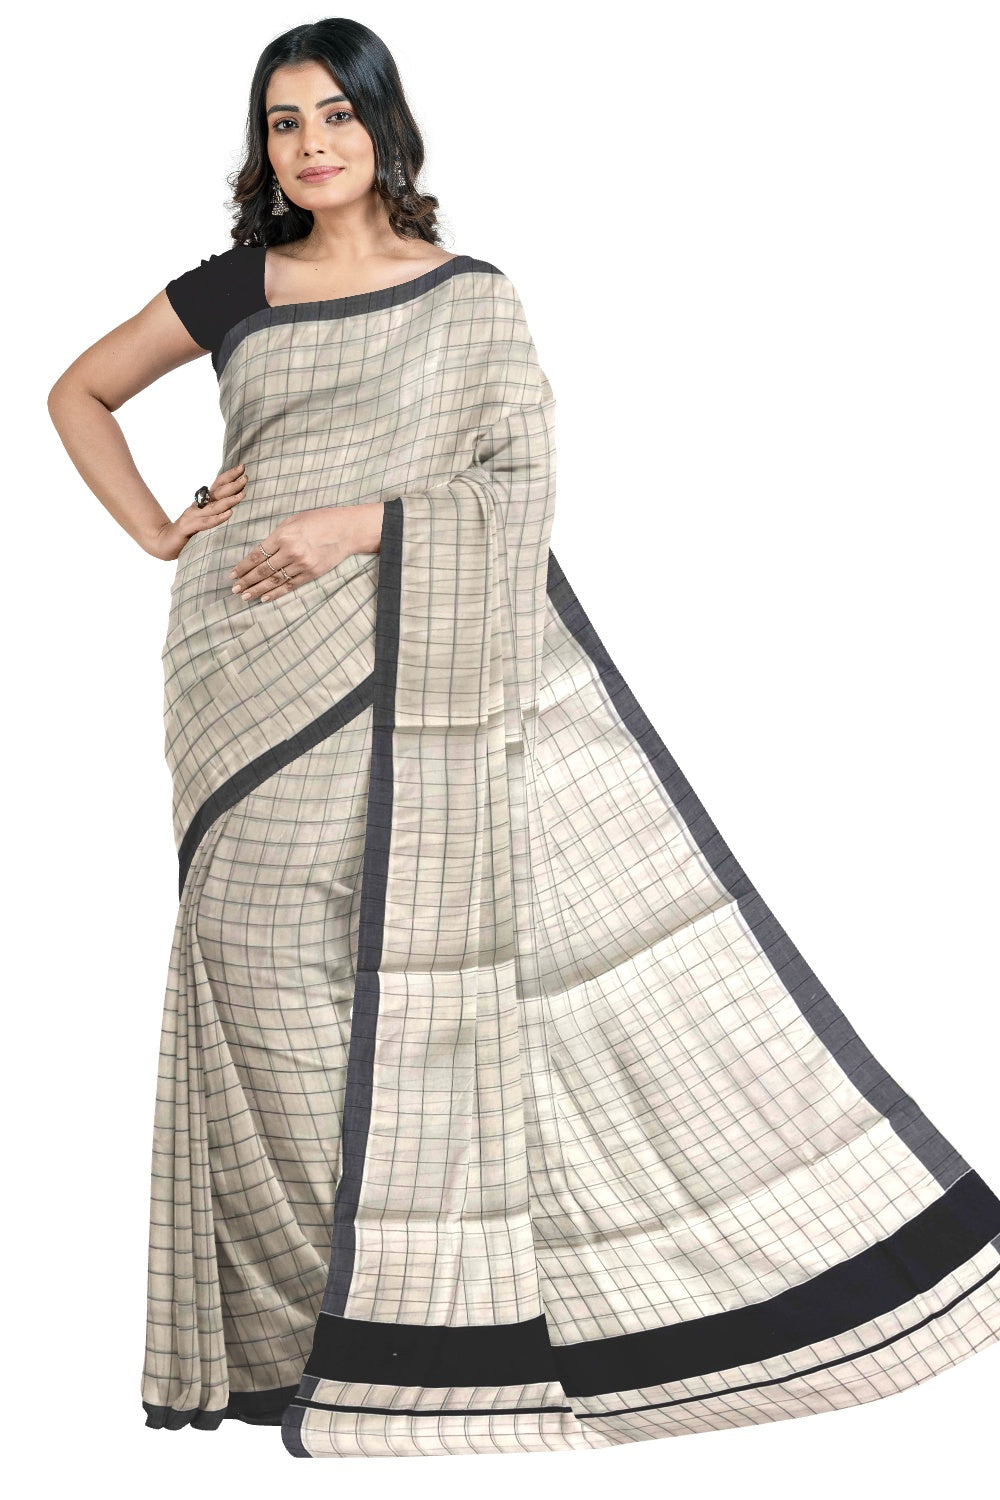 Kerala Pure Cotton Black Woven Check Saree with 3 inch Border